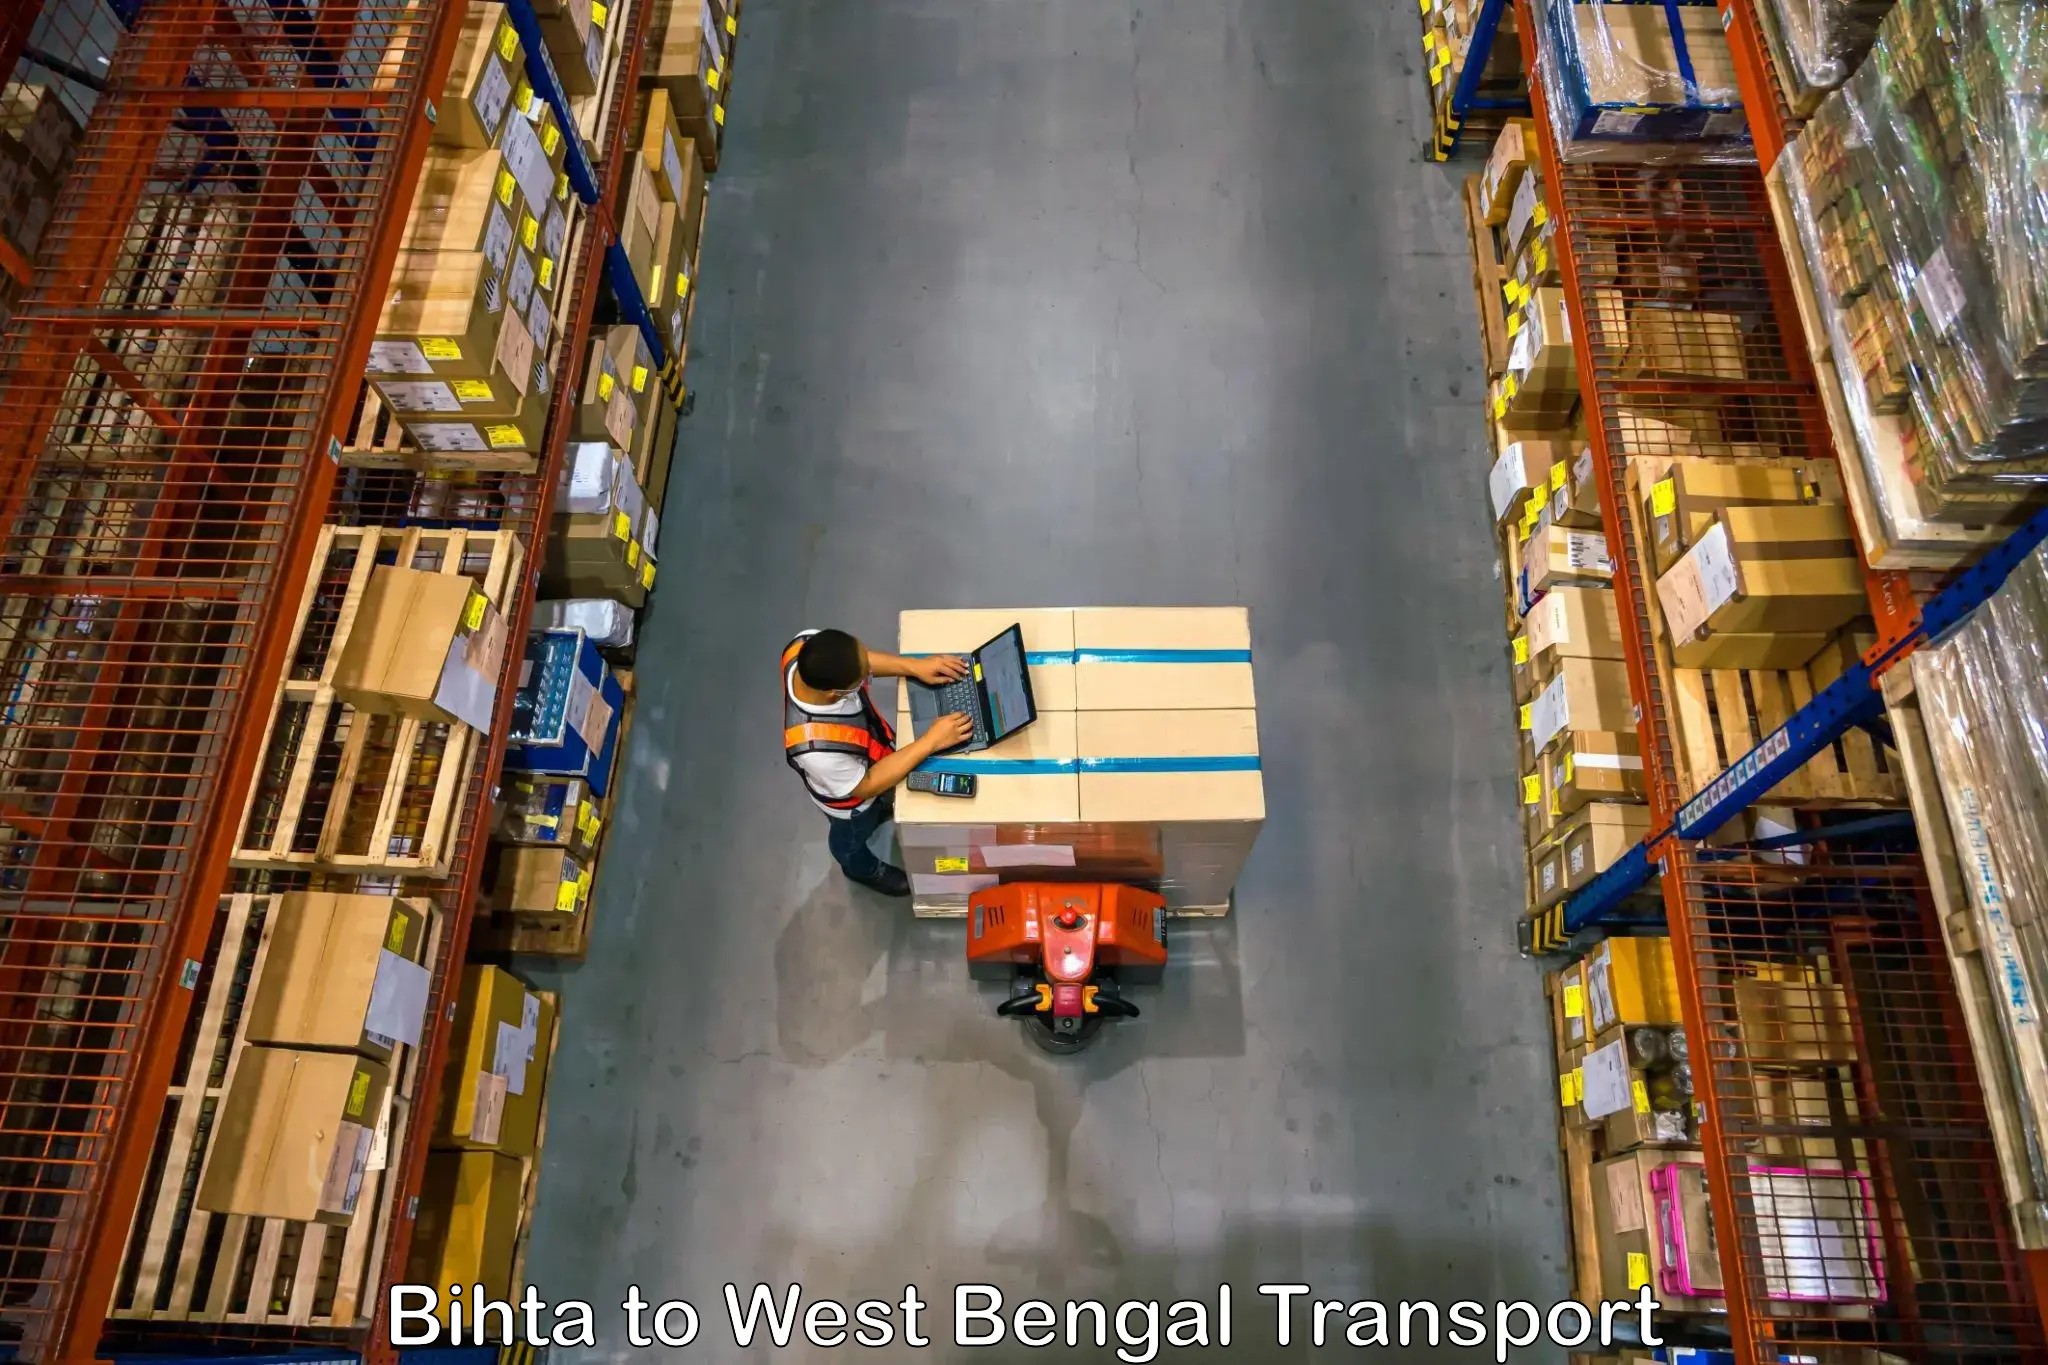 Shipping partner Bihta to Raghunathganj